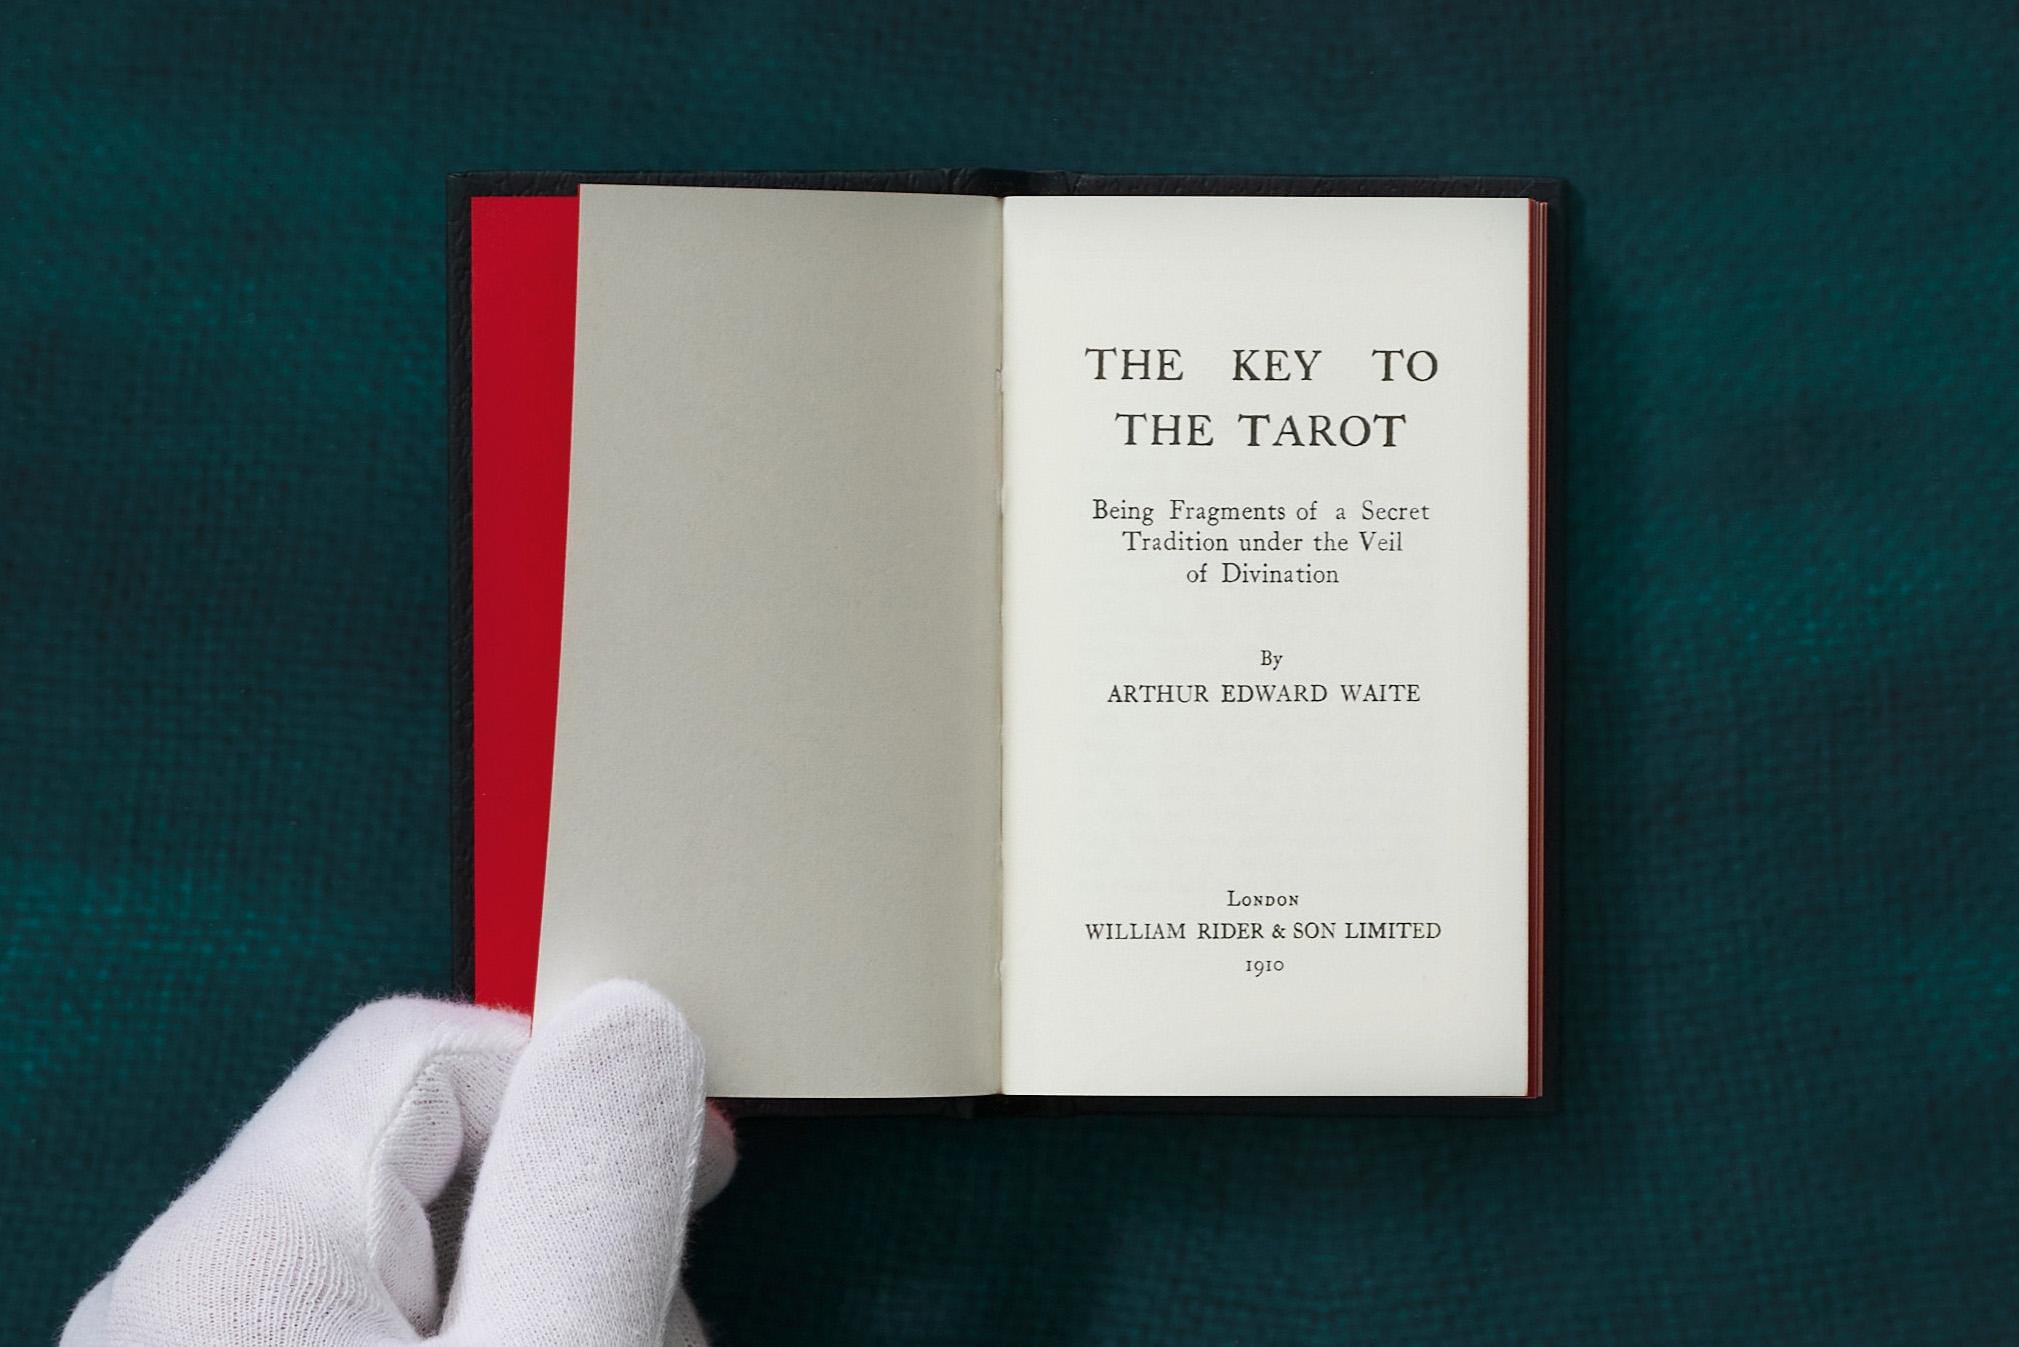 The Tarot of A. E. Waite and P. Colman Smith Tarot Deck